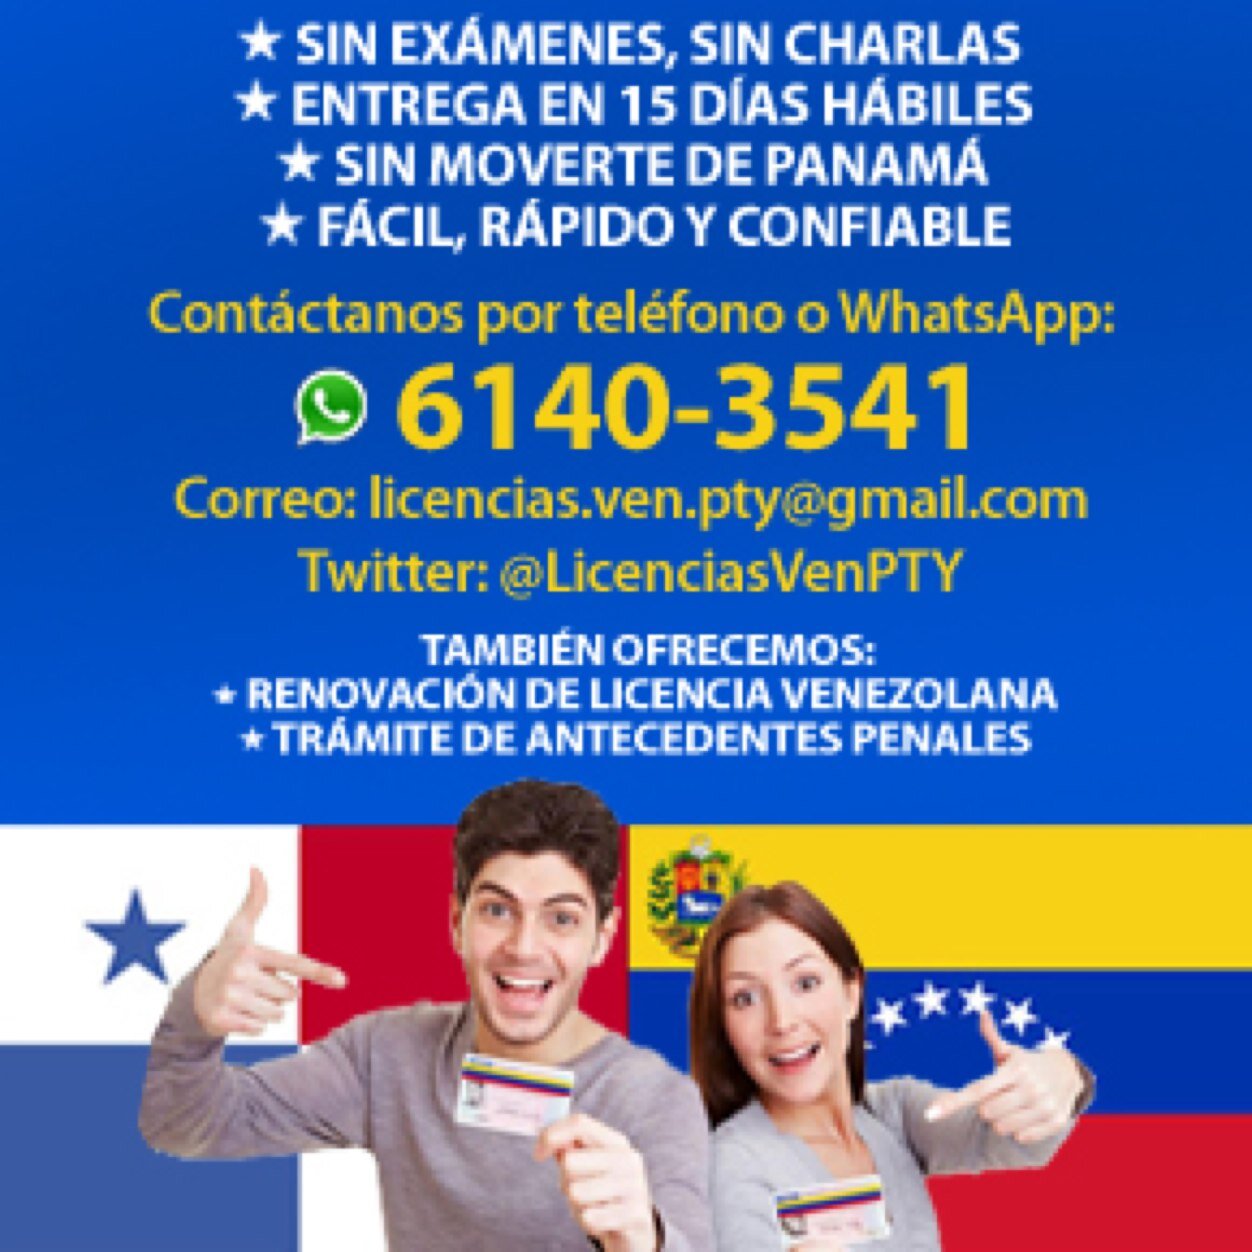 Te ayudamos a tramitar tu Homologacion de licencia de conducir en panama, sin examenes, ni charlas! Renovacion se Lic Venezolanas y Antecedentes Penales!